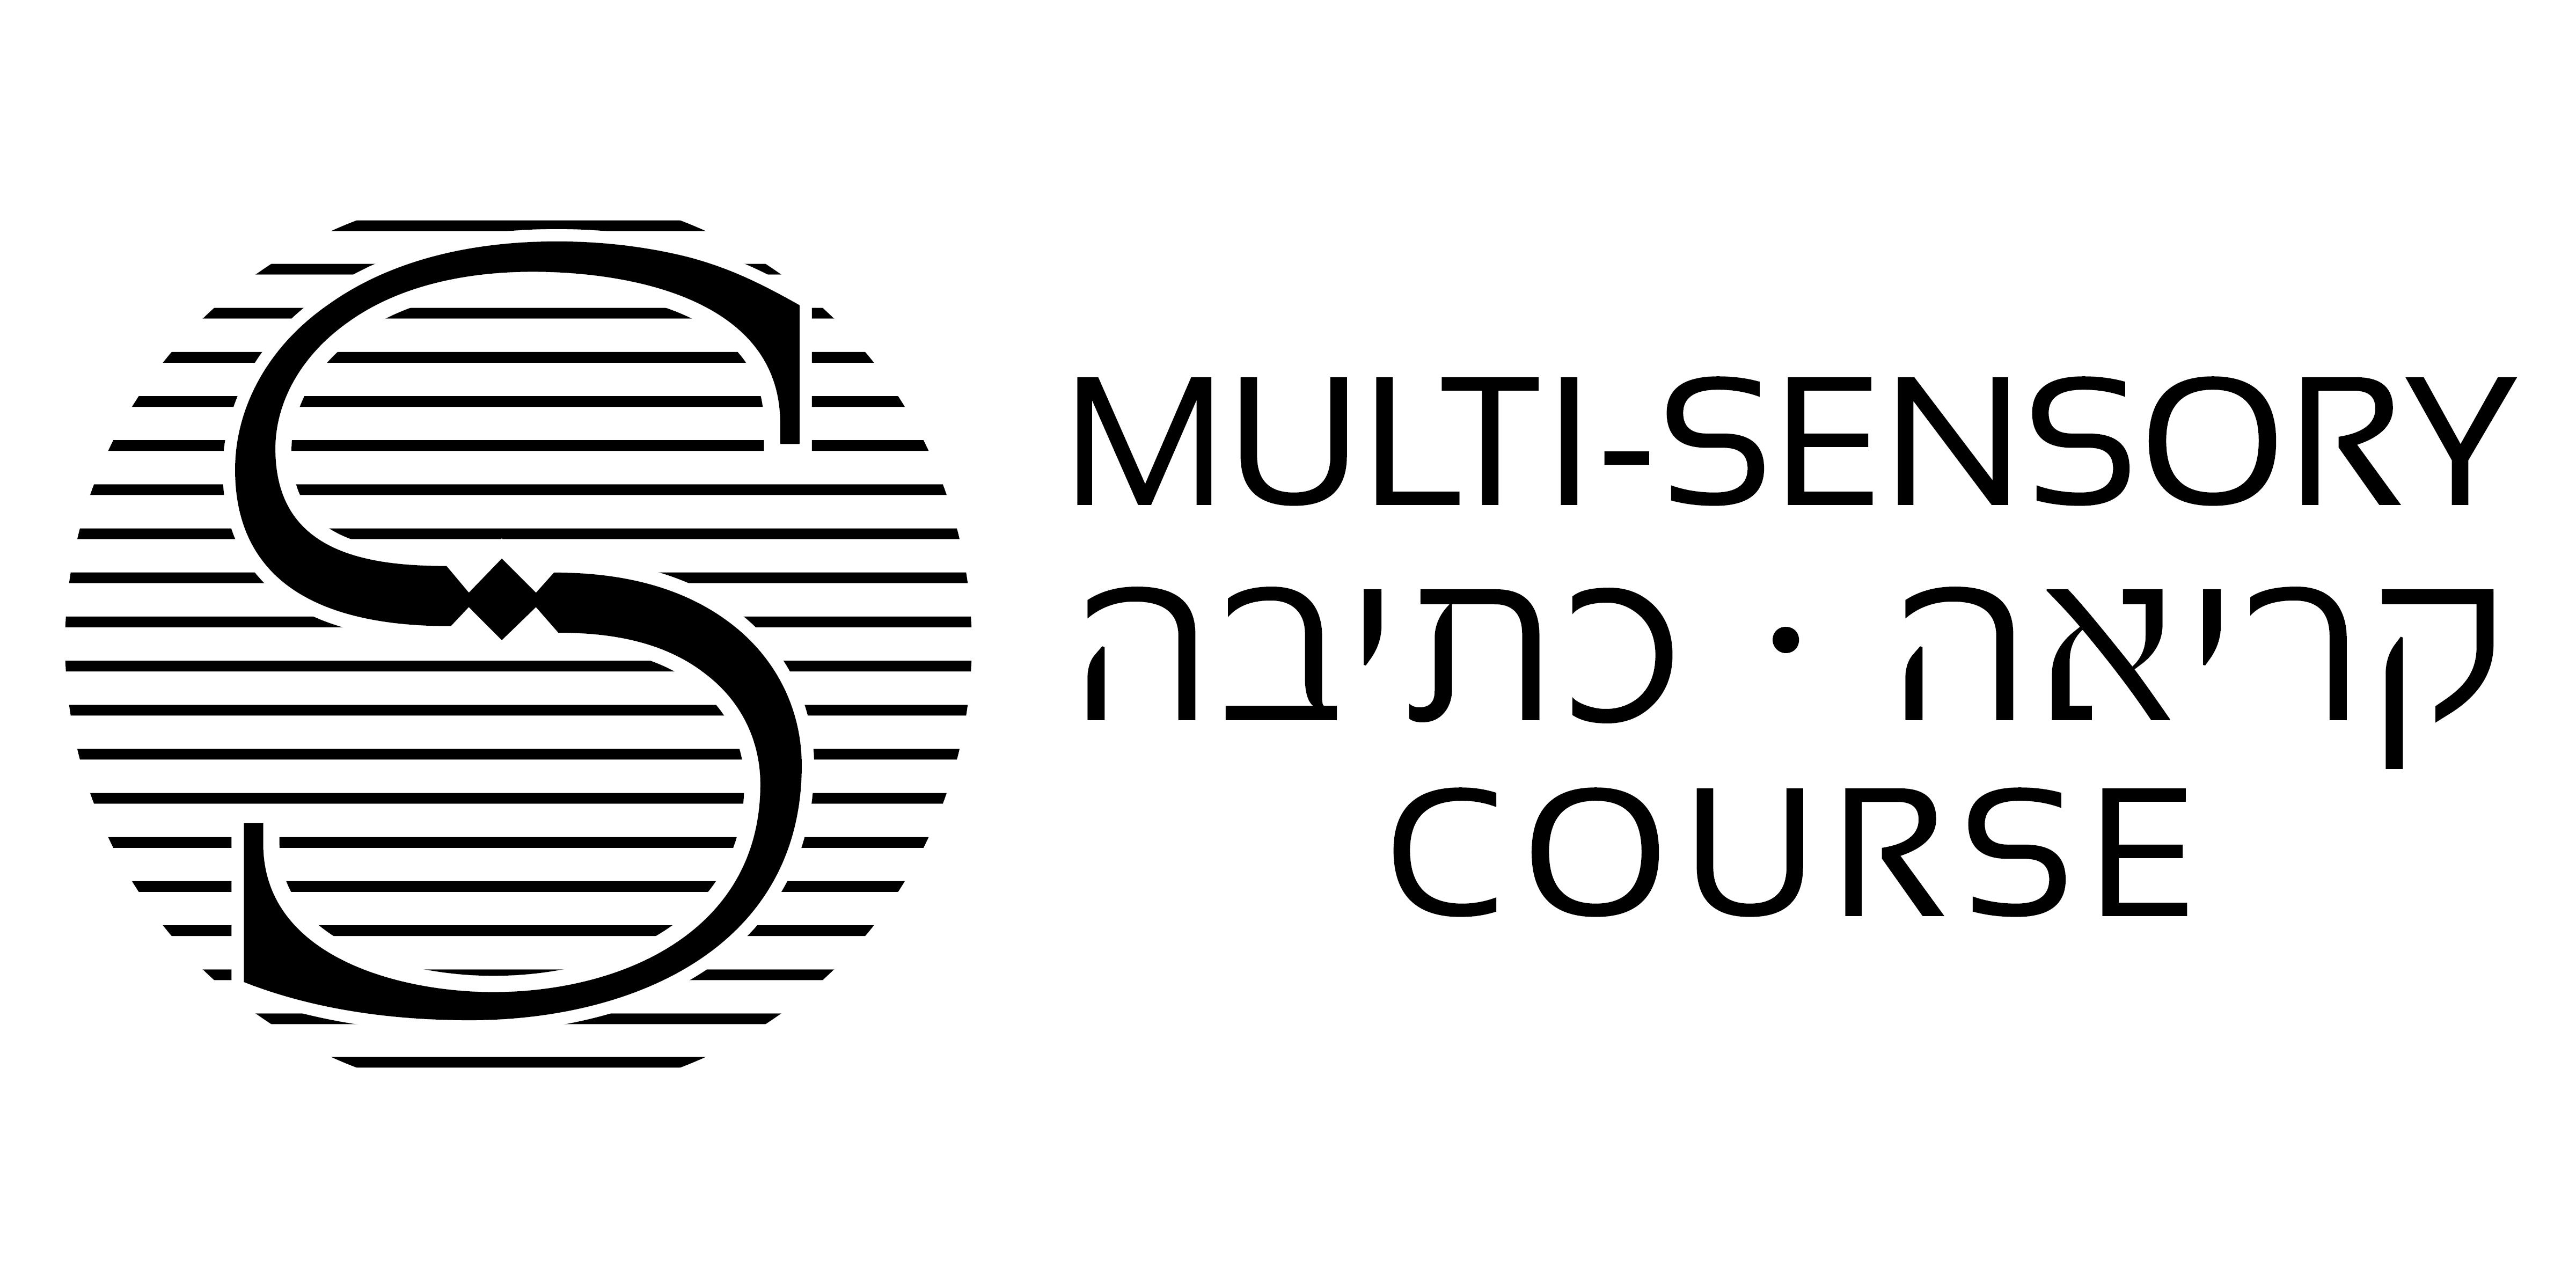 Multi Sensory course